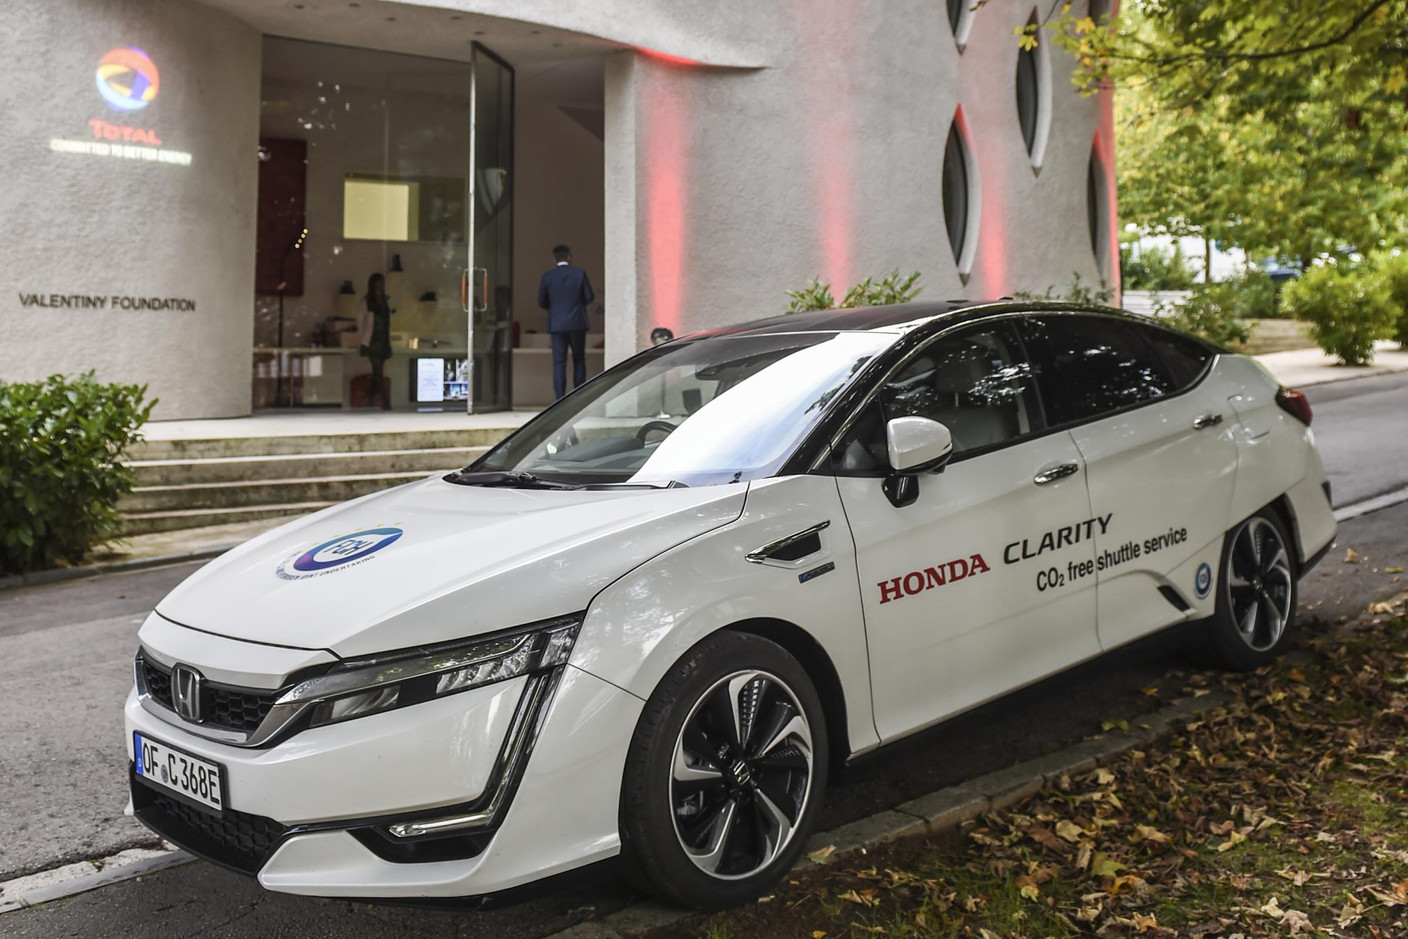 Véhicule de la marque Honda, modèle Clarity qui roule à l'hydrogène (Photo: Total Luxembourg)